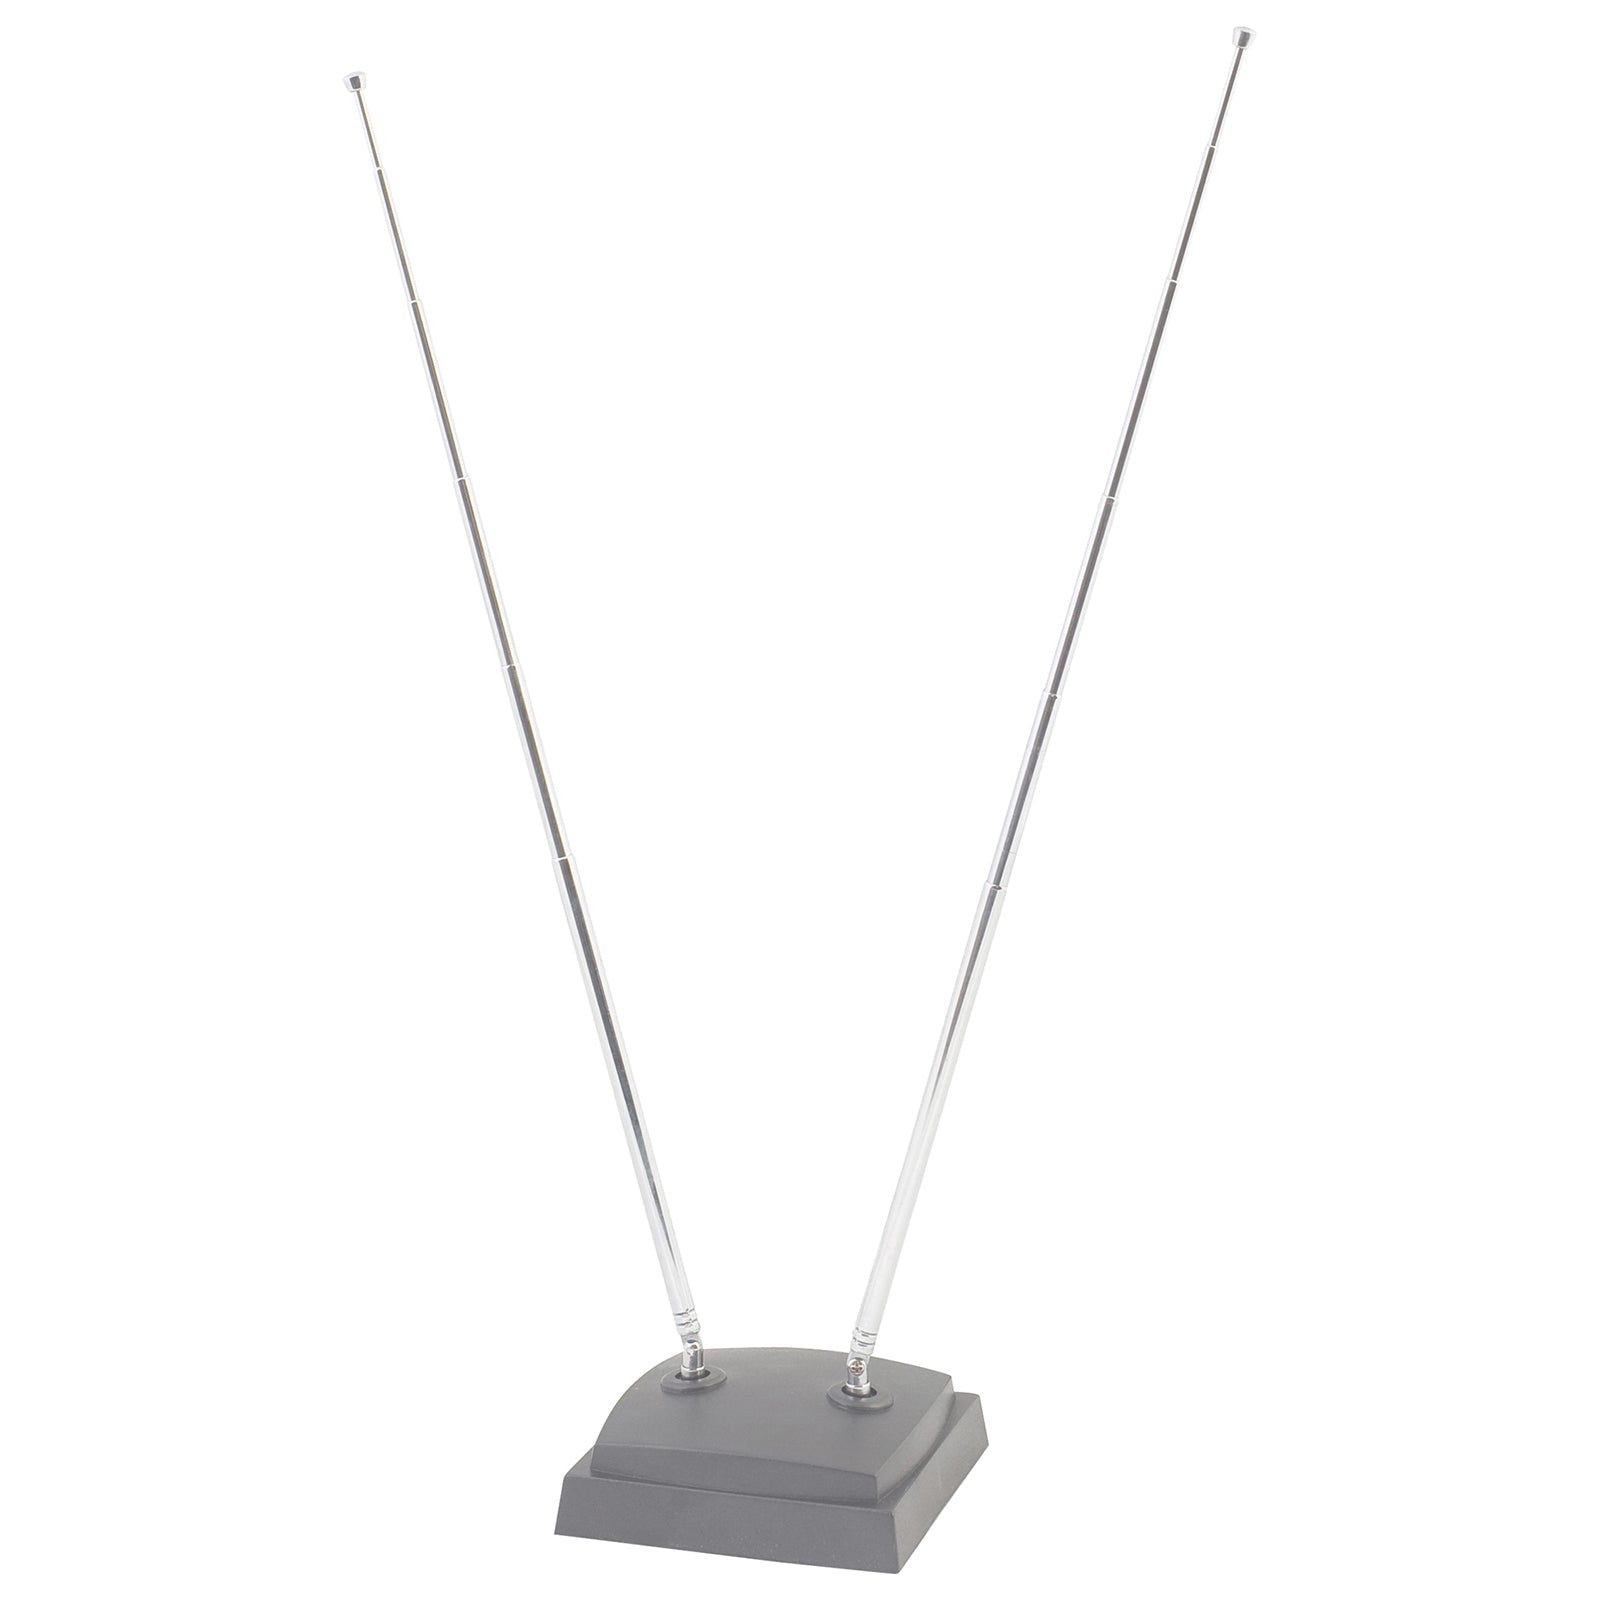 Indoor VHF UHF Antenna